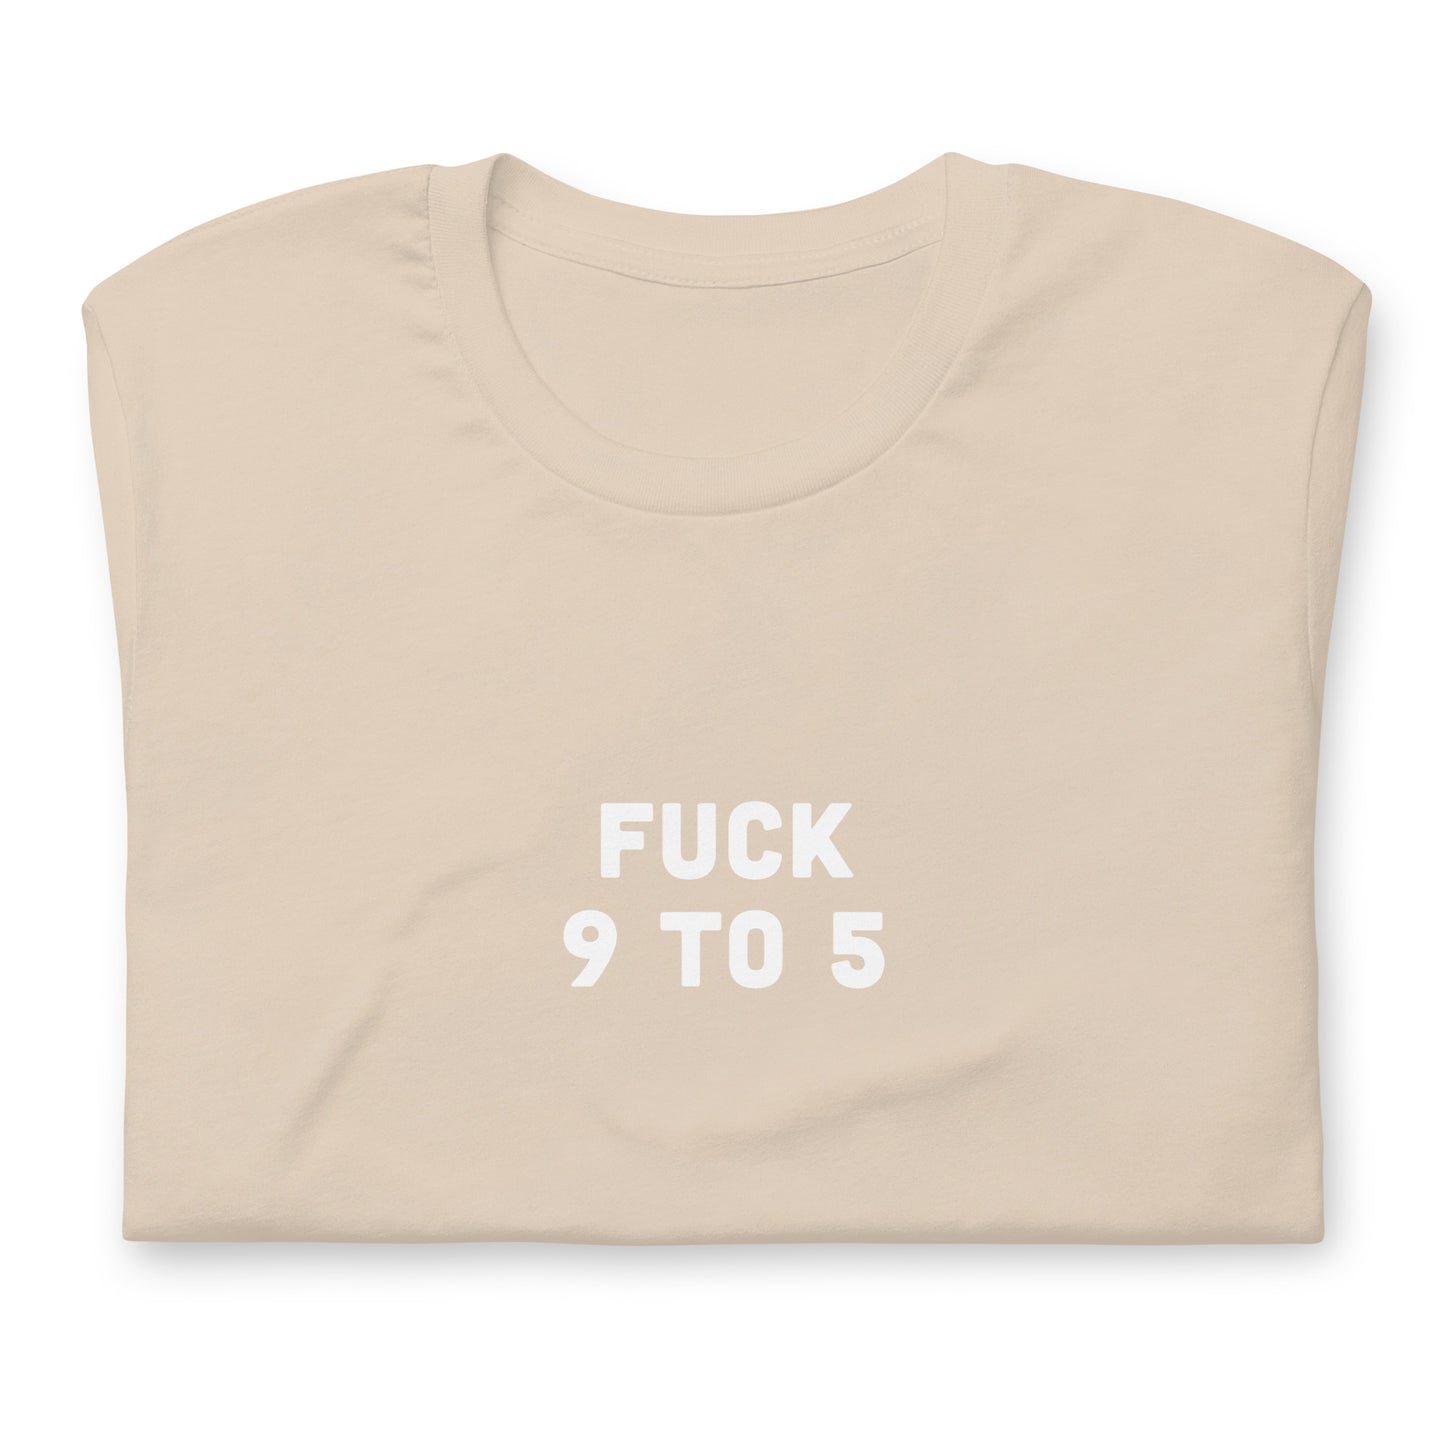 Fuck 9 To 5 T-Shirt Size L Color Asphalt